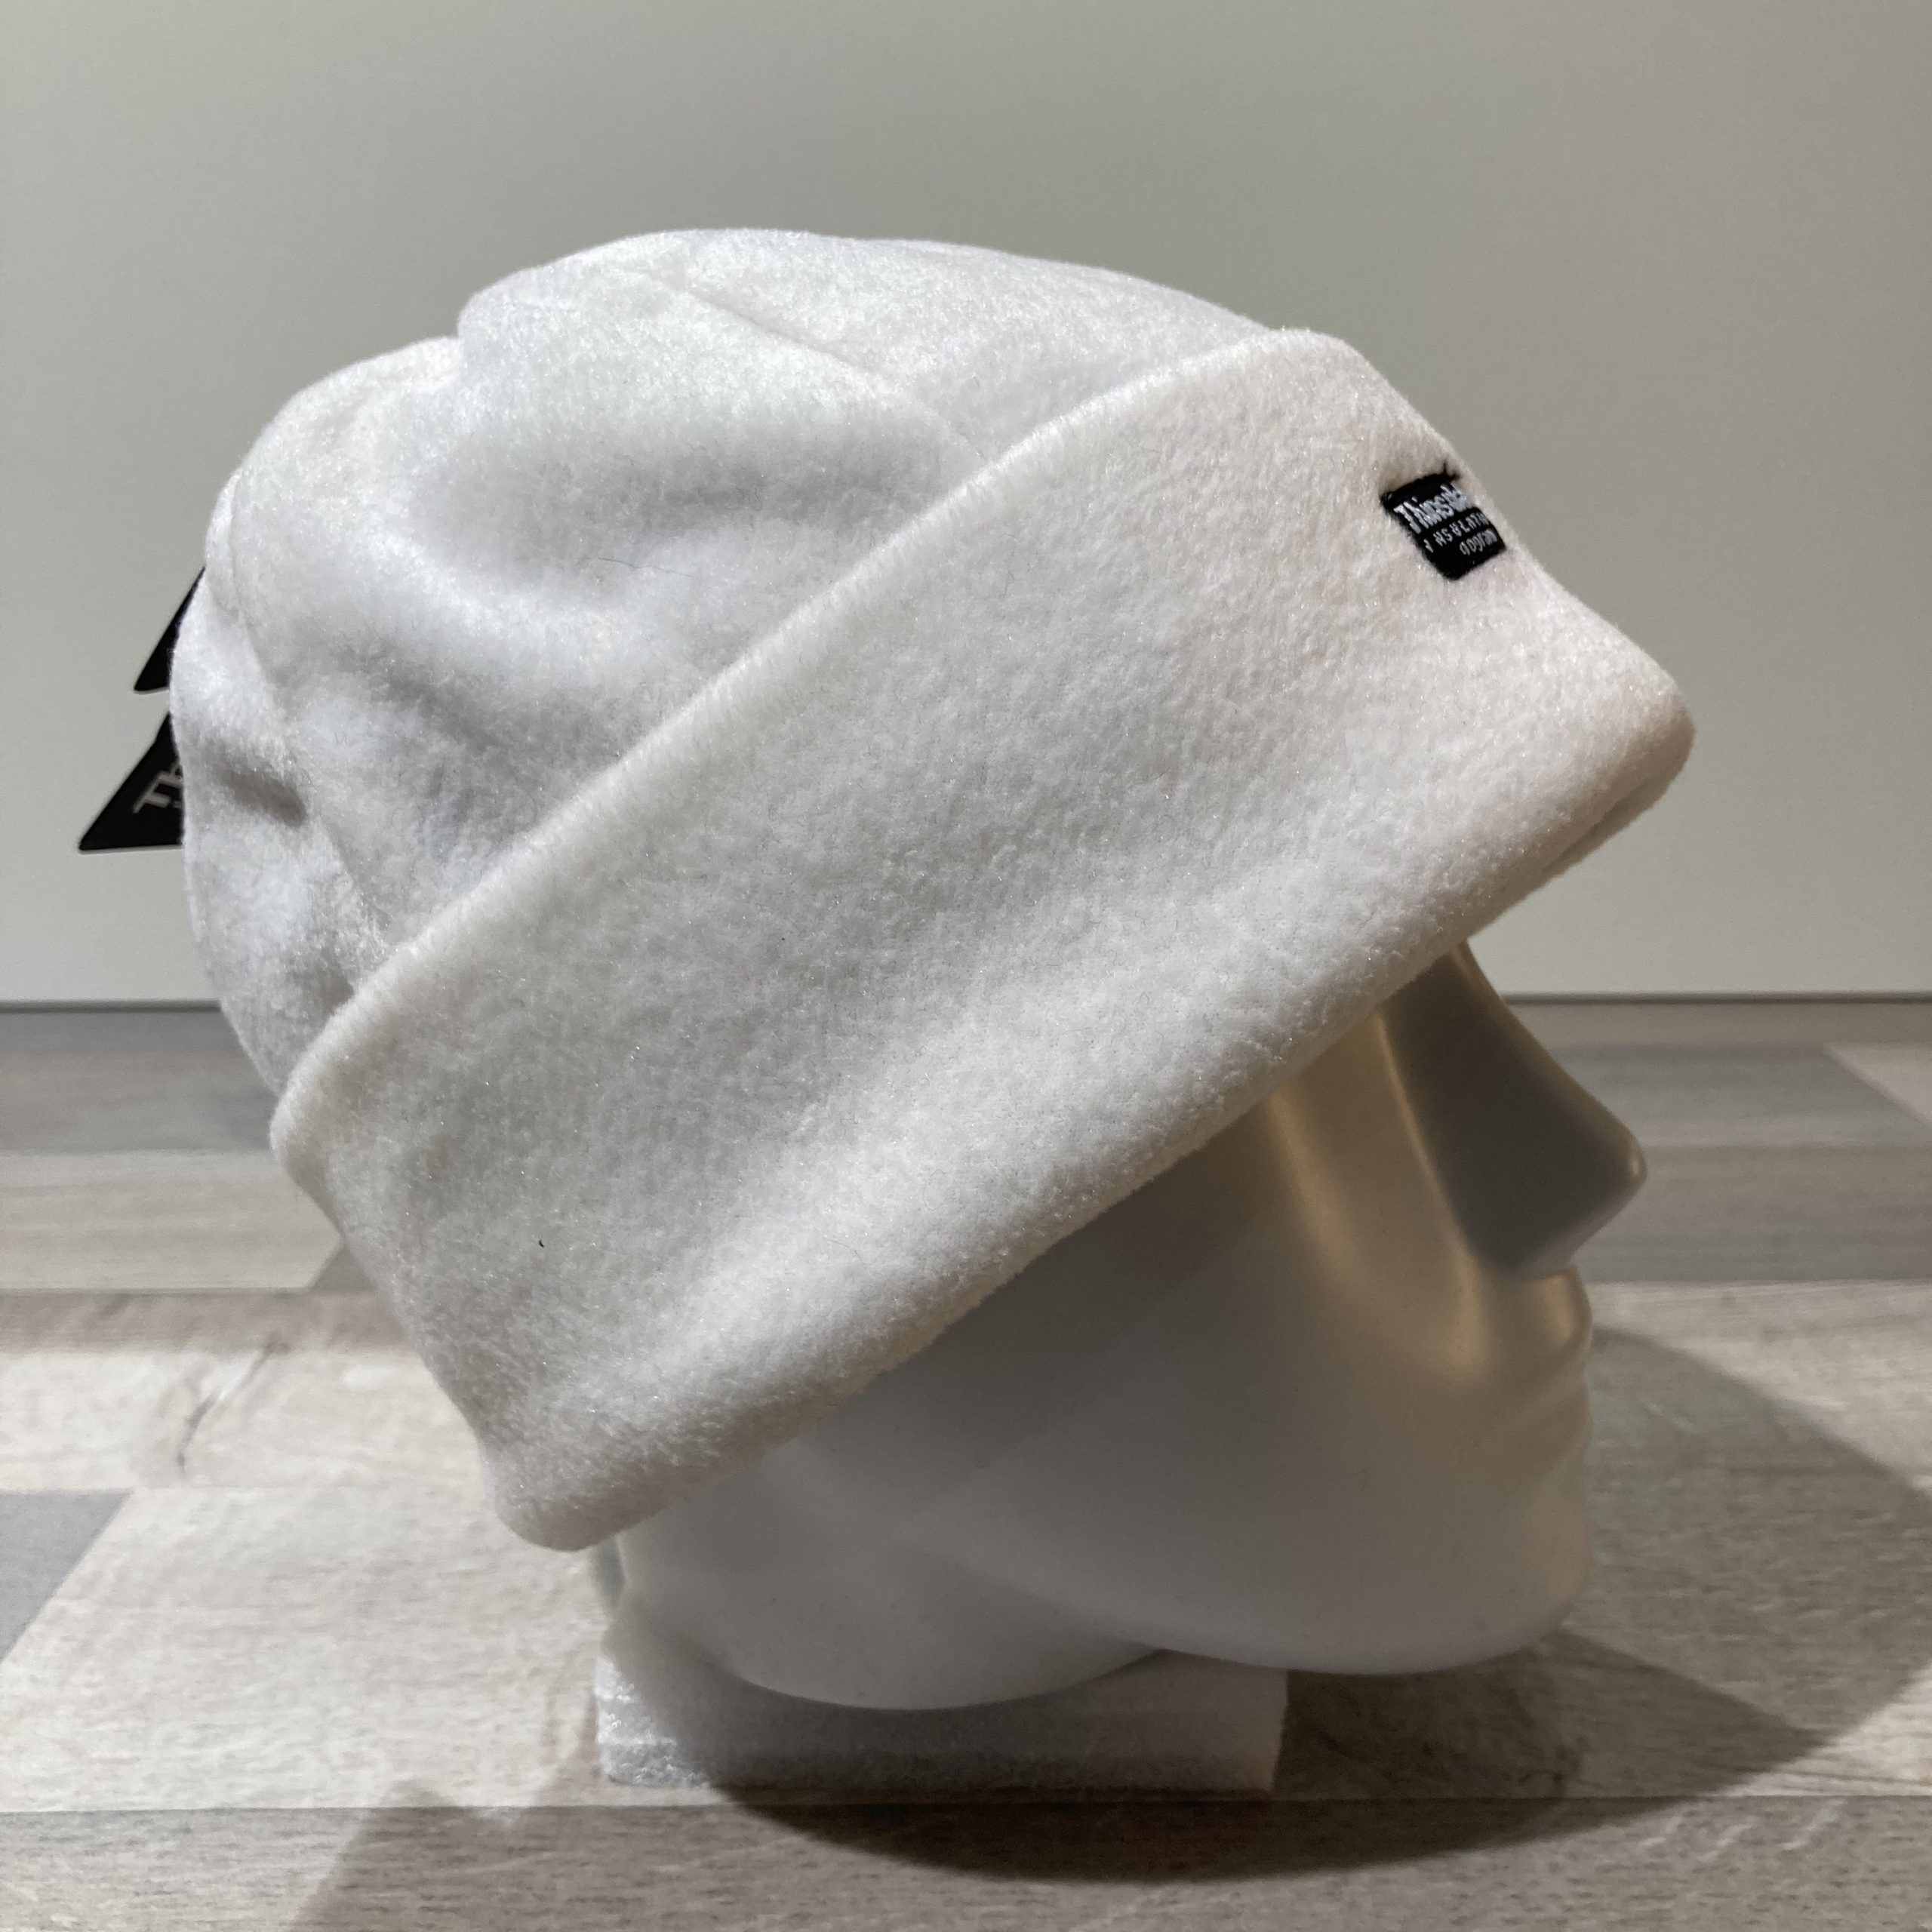 ULSTAR Bonnet d'hiver pour homme, bonnet tricoté doublé de polaire